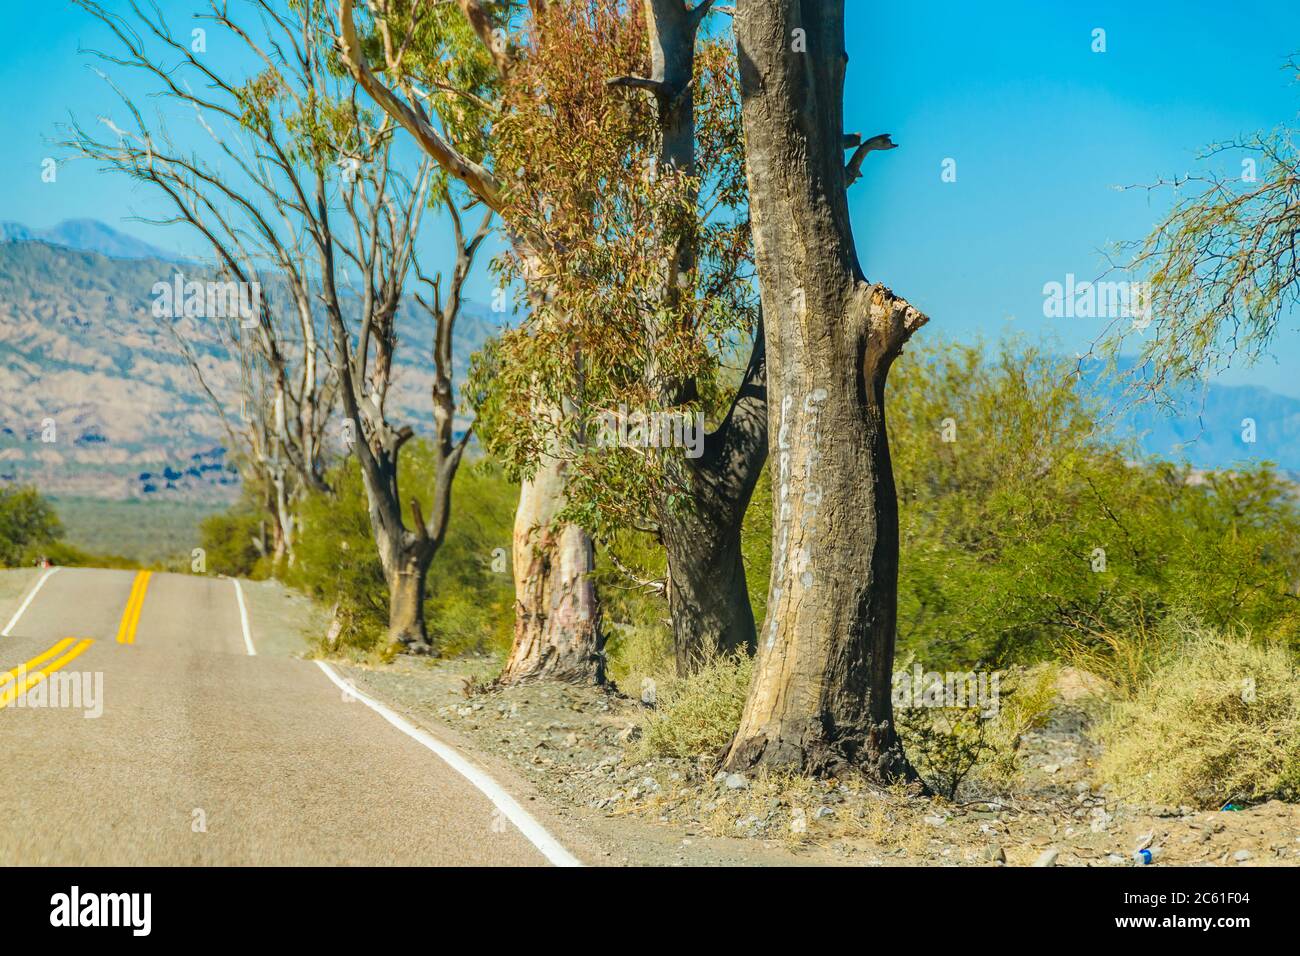 Leere Autobahn in trockener Landschaft Umwelt, san juan Provinz, argentinien Stockfoto